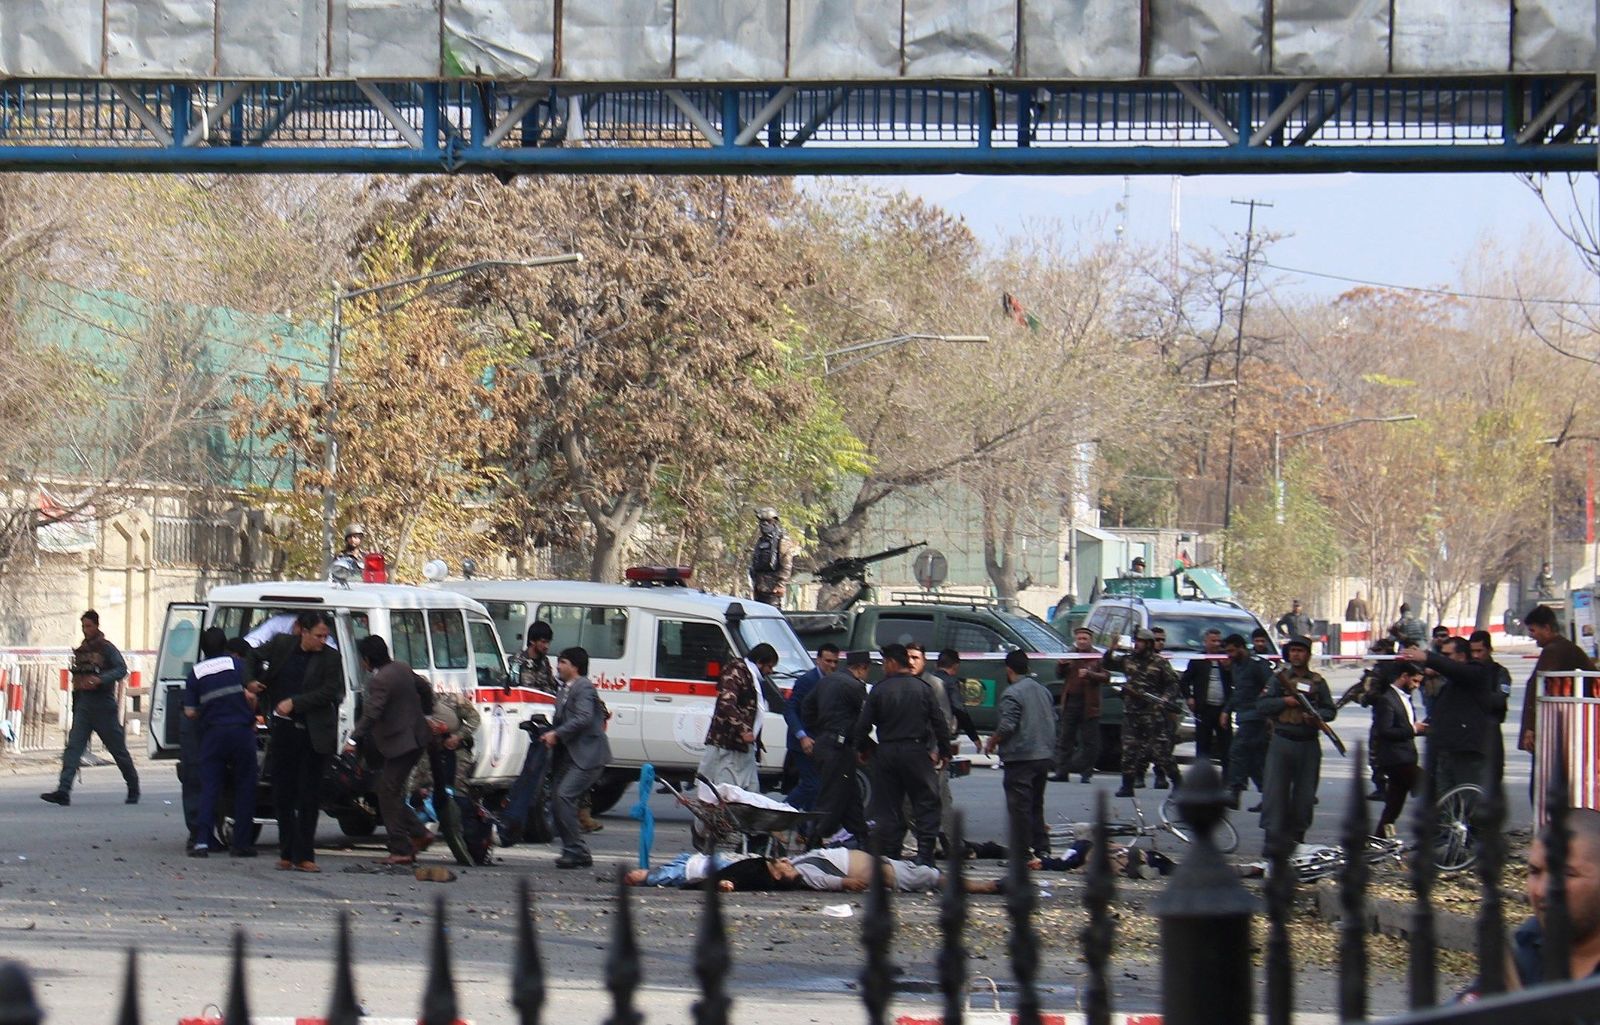 Protesta. El atentado ocurrió en medio de una protesta antigubernamental, cerca del Palacio Presidencial afgano. (EFE)